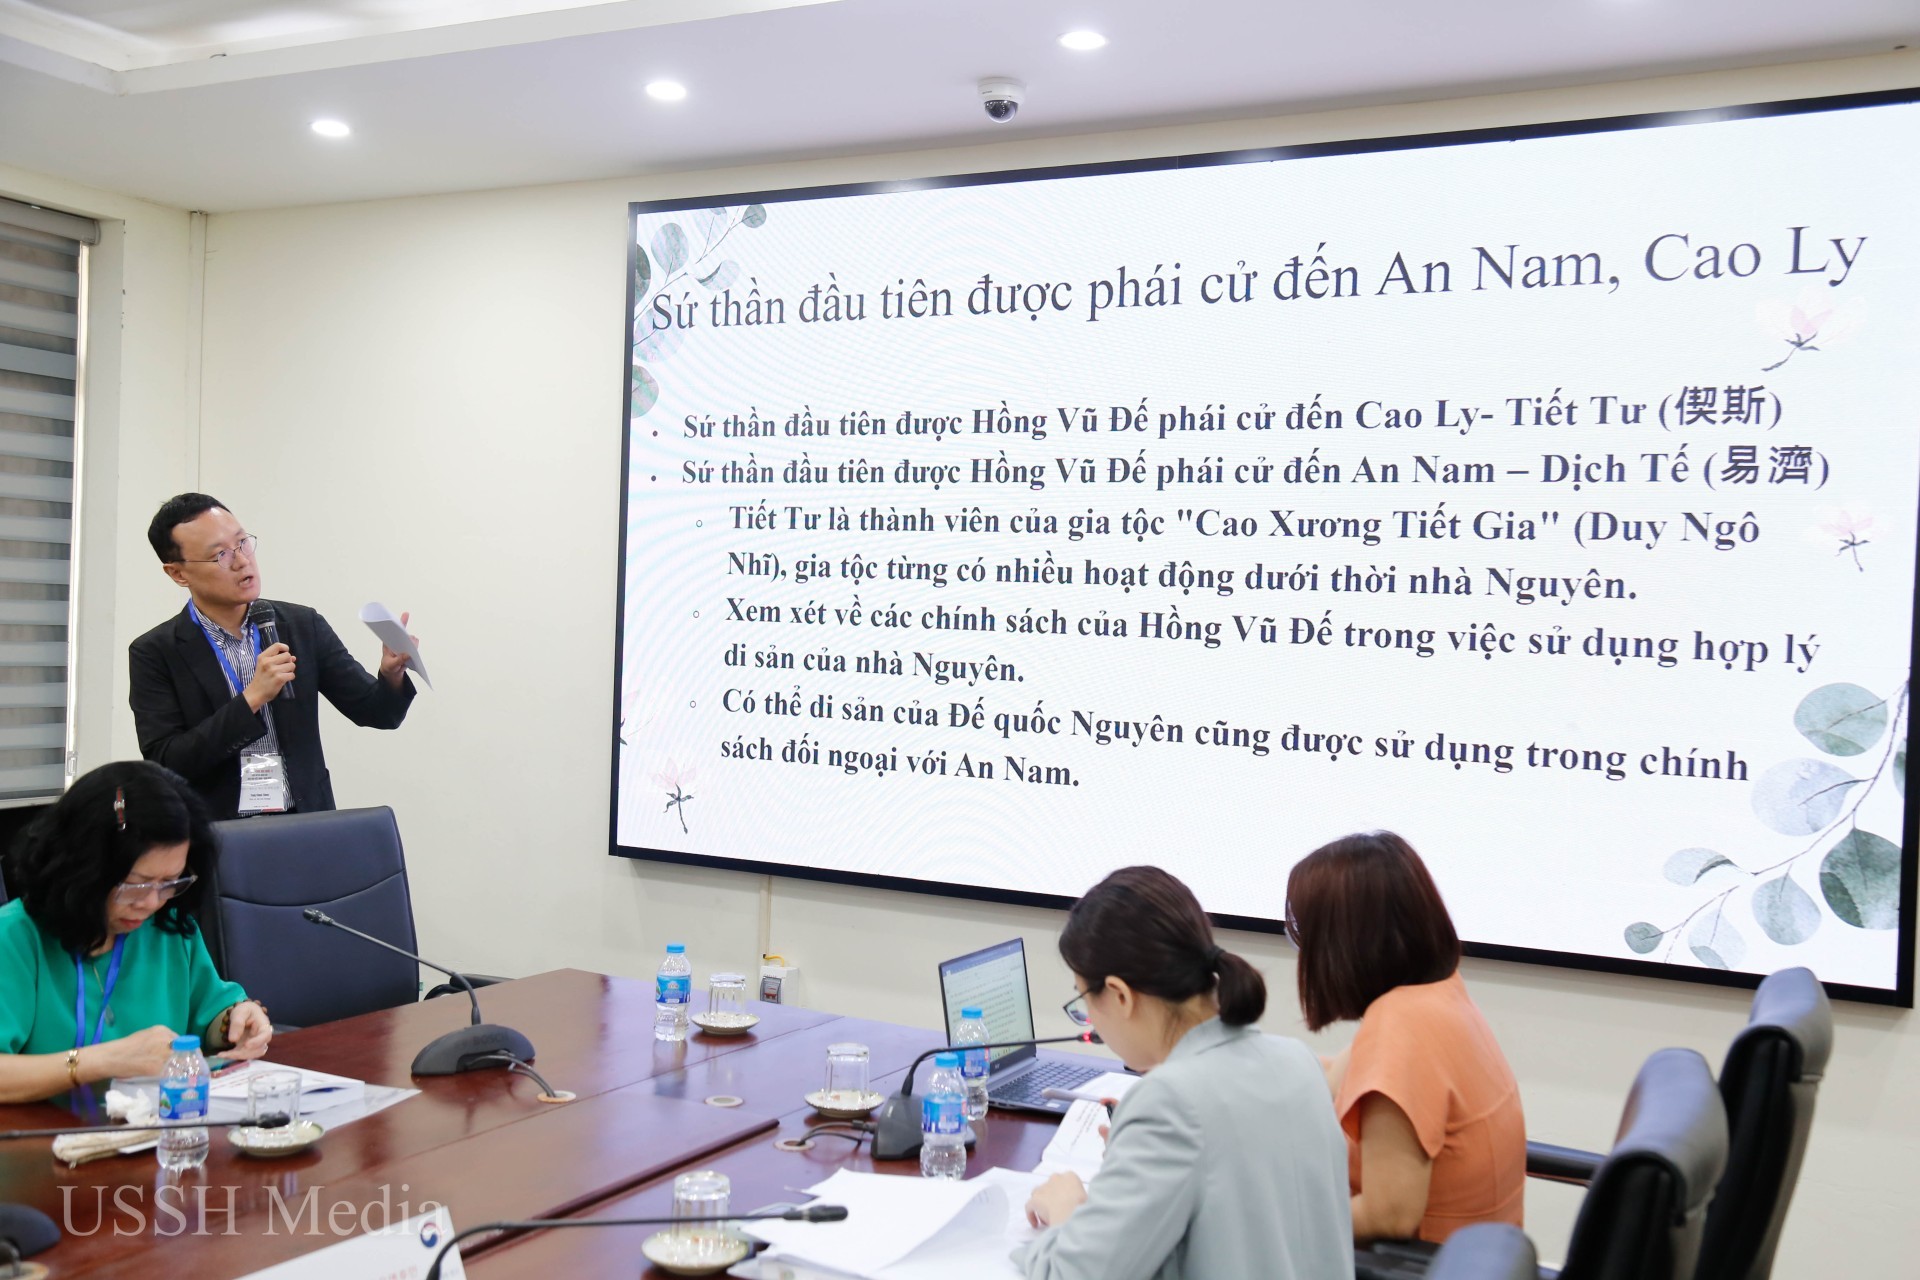 Việt Nam và Hàn Quốc có nhiều điểm tương đồng về lịch sử và văn hóa